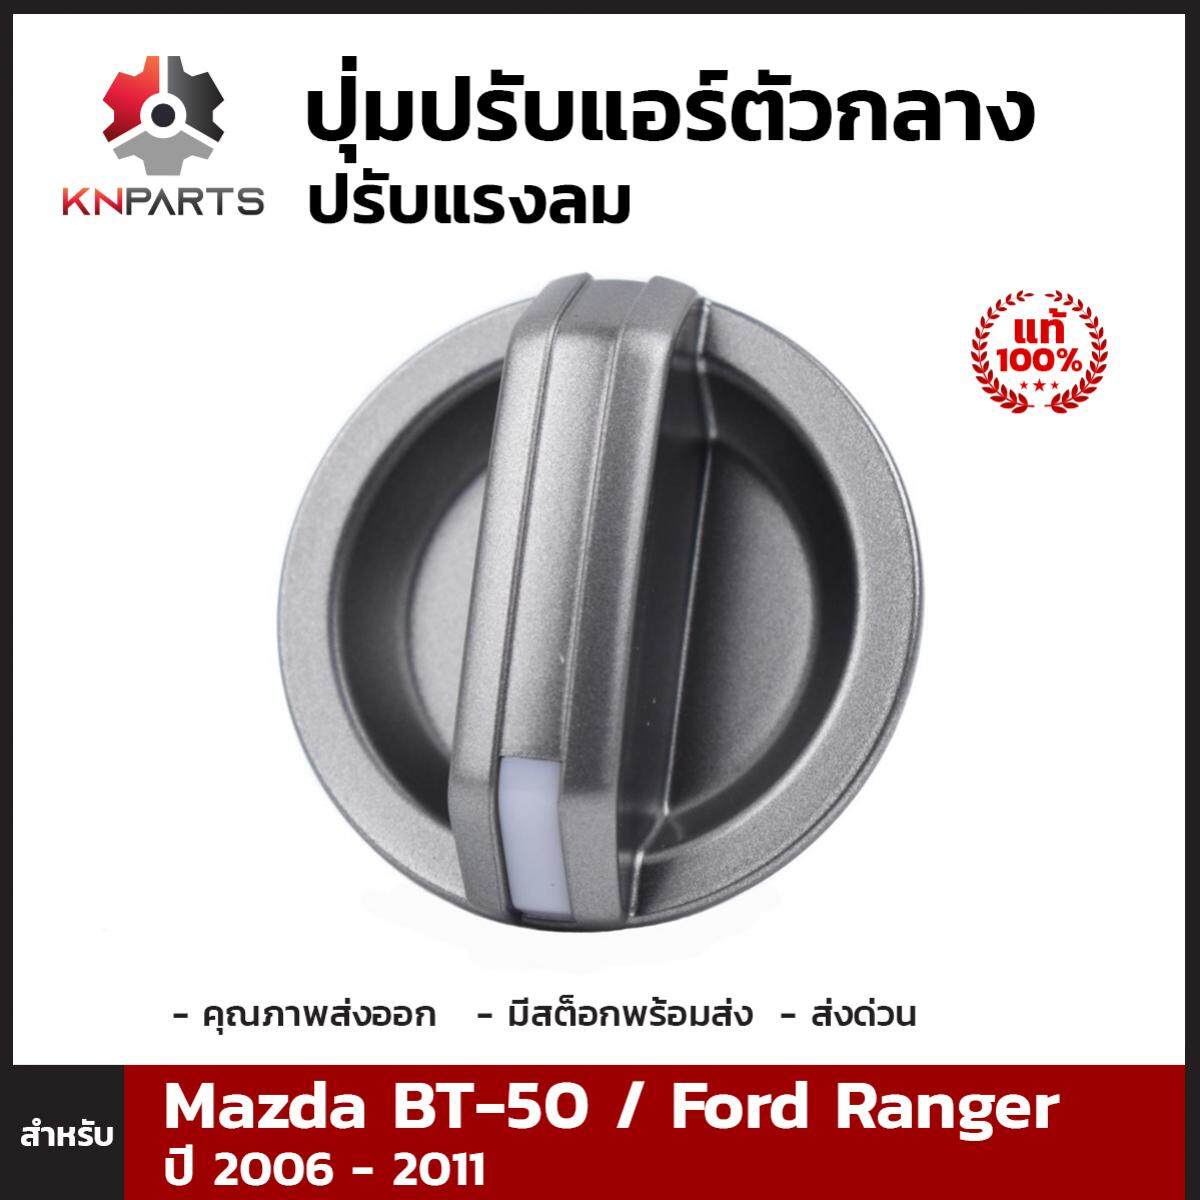 ปุ่มปรับแอร์ ตัวกลาง ปรับแรงลม ของแท้ 1 ชิ้น สำหรับ Mazda BT-50 / Ford Ranger ปี 2006-2011